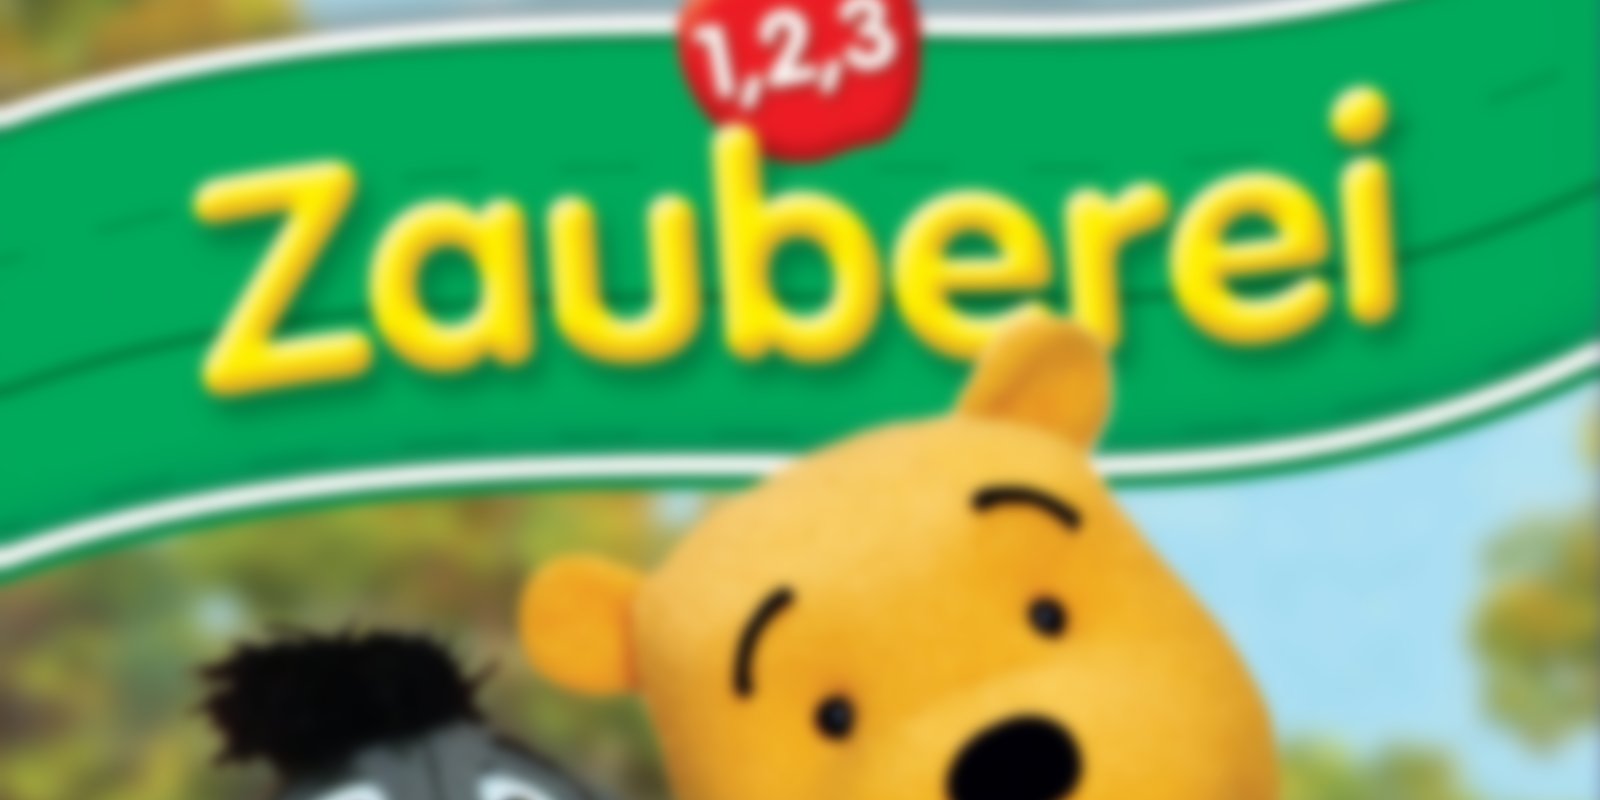 Winnie Puuh's Bilderbuch - 1, 2, 3 Zauberei